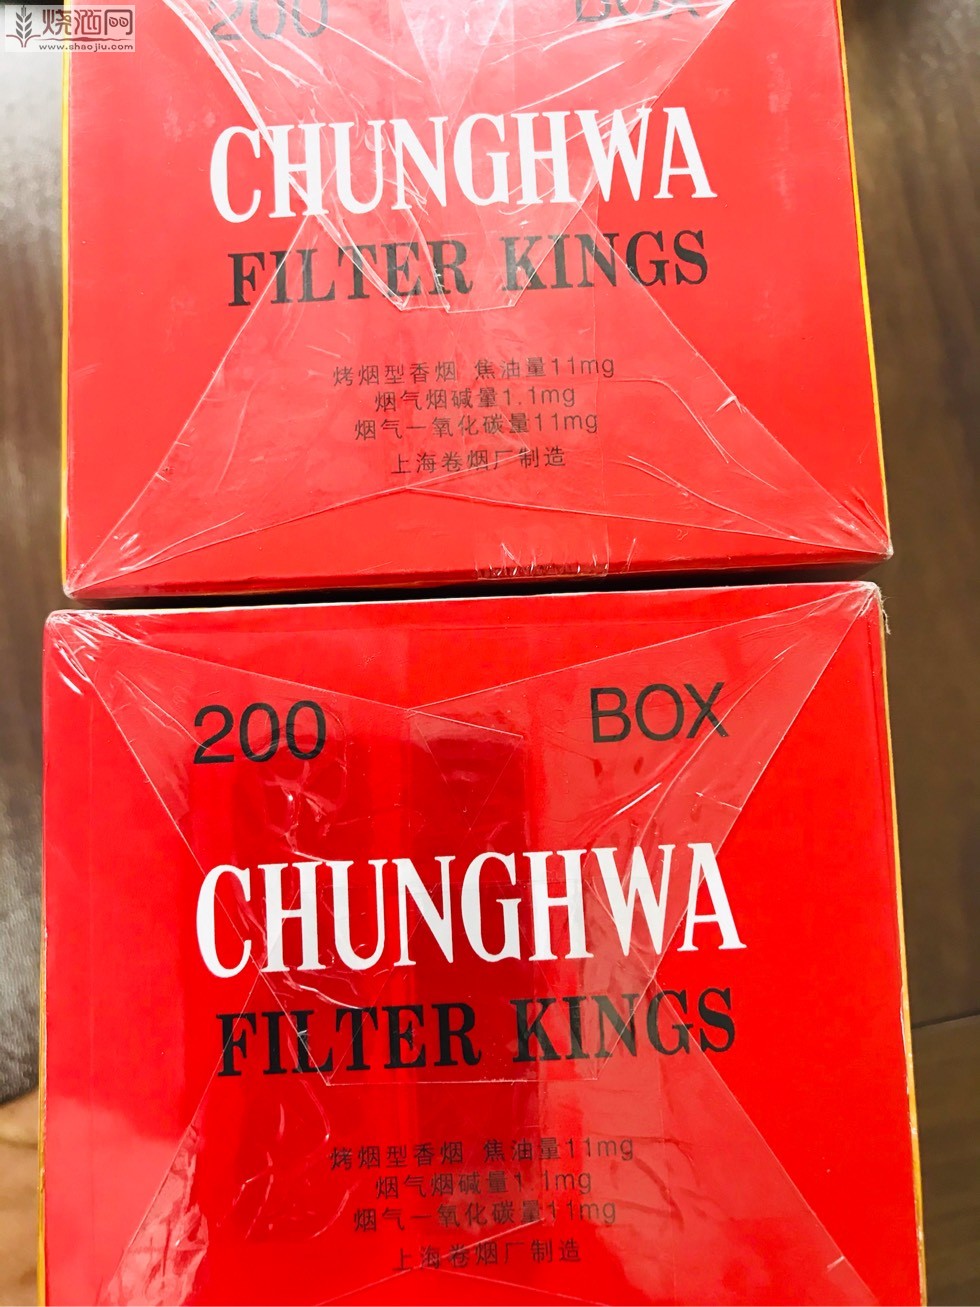 中华烟硬四方盒图片